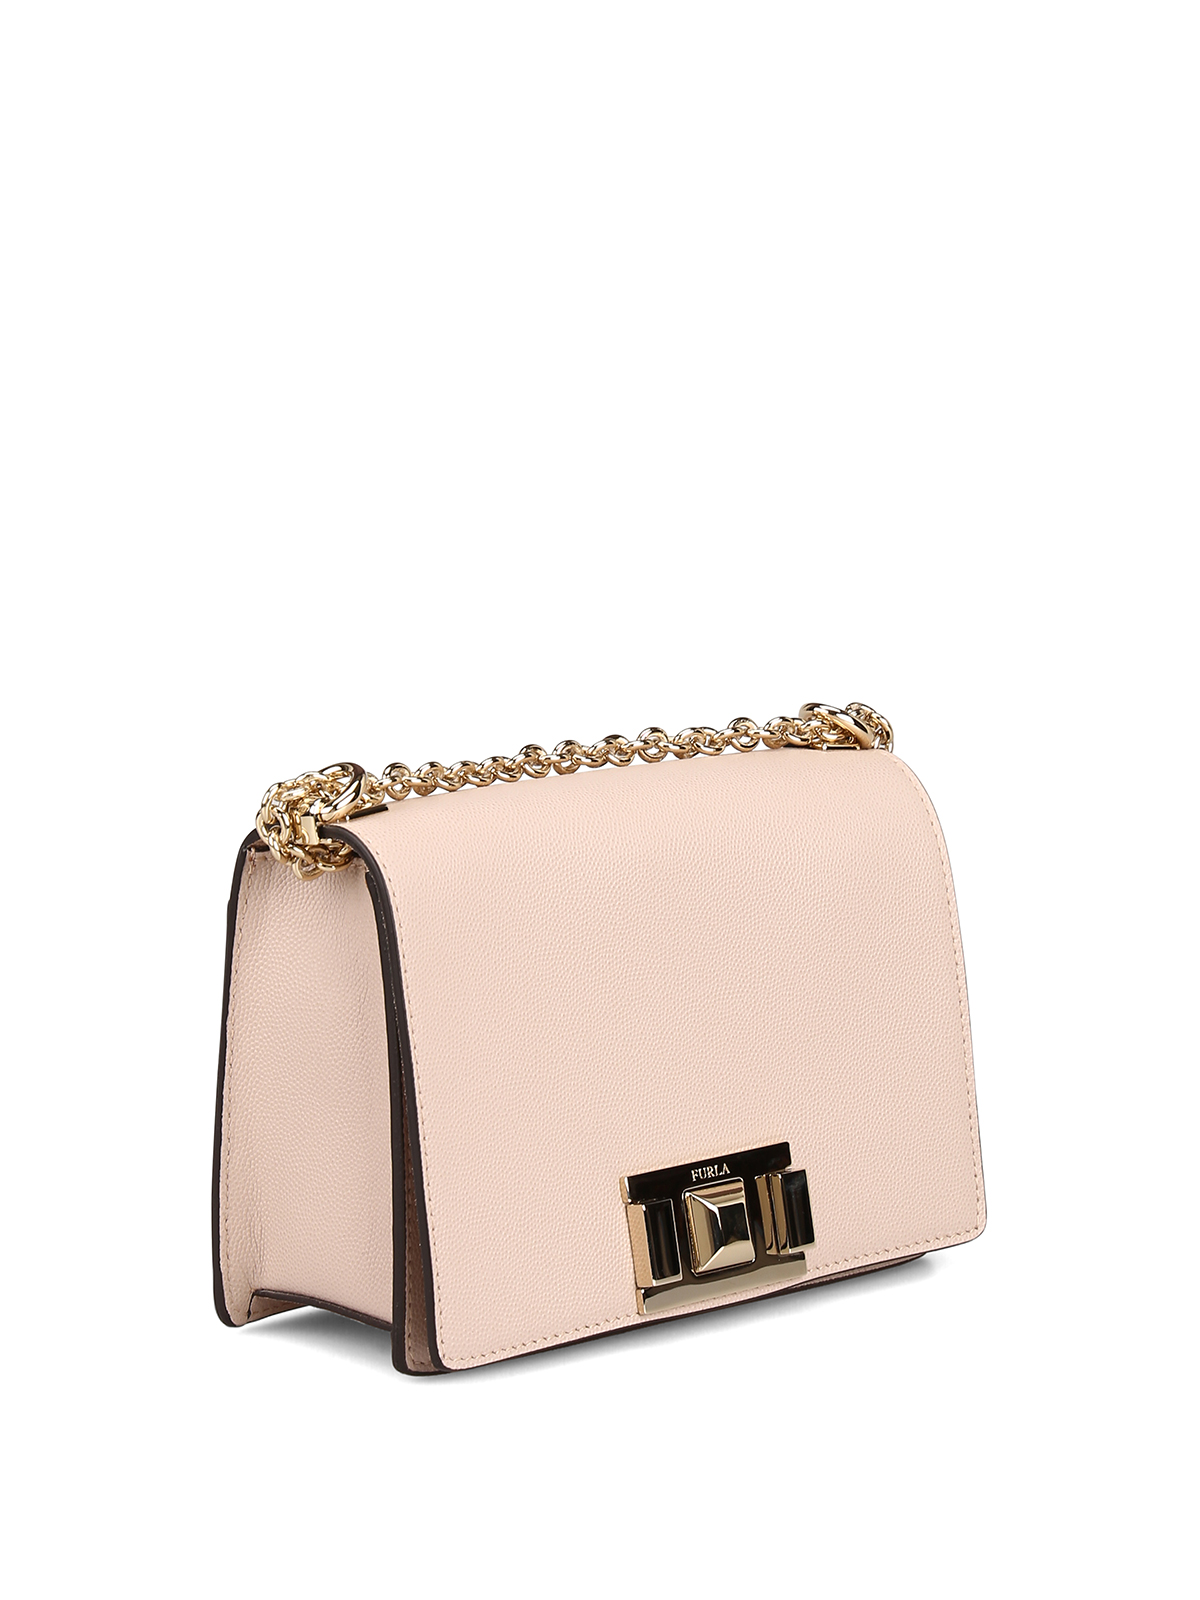 Furla - Mimì mini light pink bag - shoulder bags - 1000672BBVA6Q26